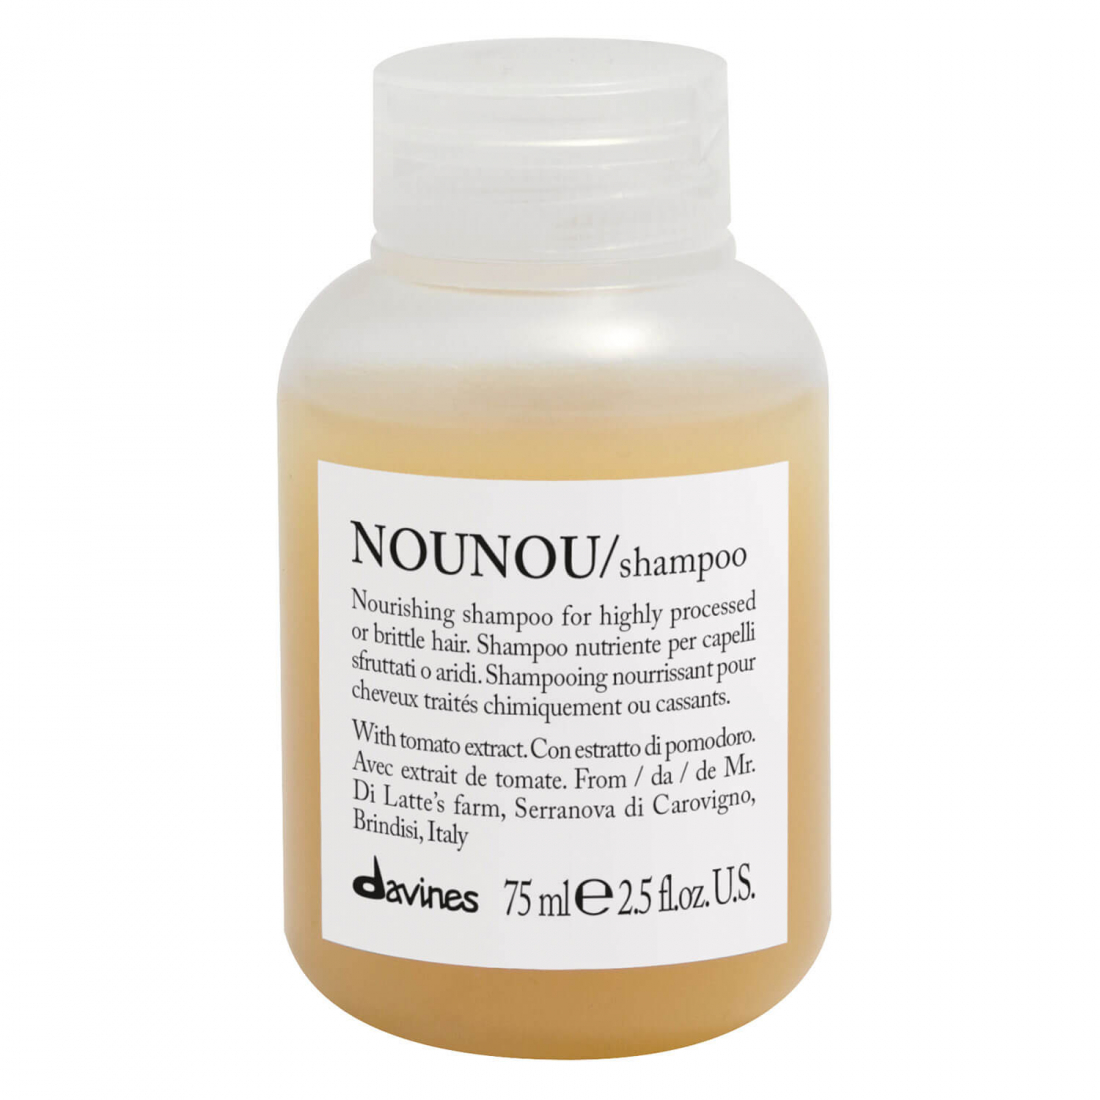 'Nounou' Shampoo - 75 ml